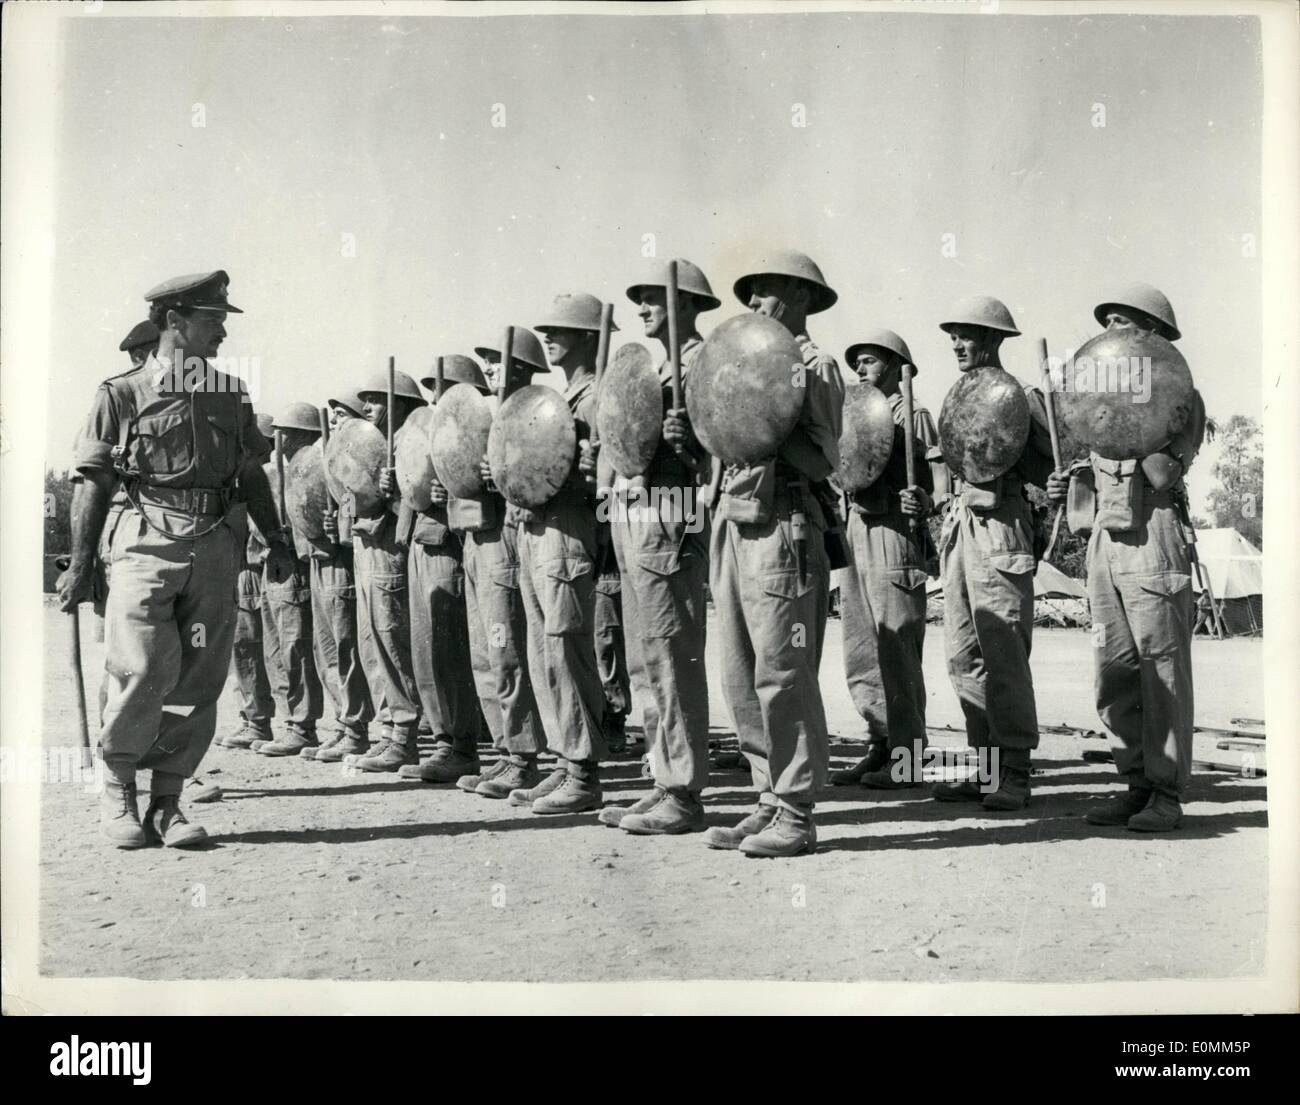 10. Oktober 1955 - Britische Truppen in Zypern ISSd mit Schlagstöcken und Schilden - ersetzen ihre Gewehre als Anti-Riot-Waffen.: Nach der Erklärung des Gouverneurs des zyprischen Feldmarschalls Sir John Hardin - die britischen Truppen - 1. Bataillon Süd Stafford Regiment wurden mit Metallschilden (Mülleimer Deckel) und Schlagstöcken, mit denen Unruhen zu unterdrücken ausgestellt. Tommy Atkins hat zum ersten Mal in der Geschichte der britischen Armee seine Eifle und sein Bajonett für einen Stock und einen Mülleimerdeckel niedergelegt. Foto zeigt Männer des South Stafford regt Stockfoto